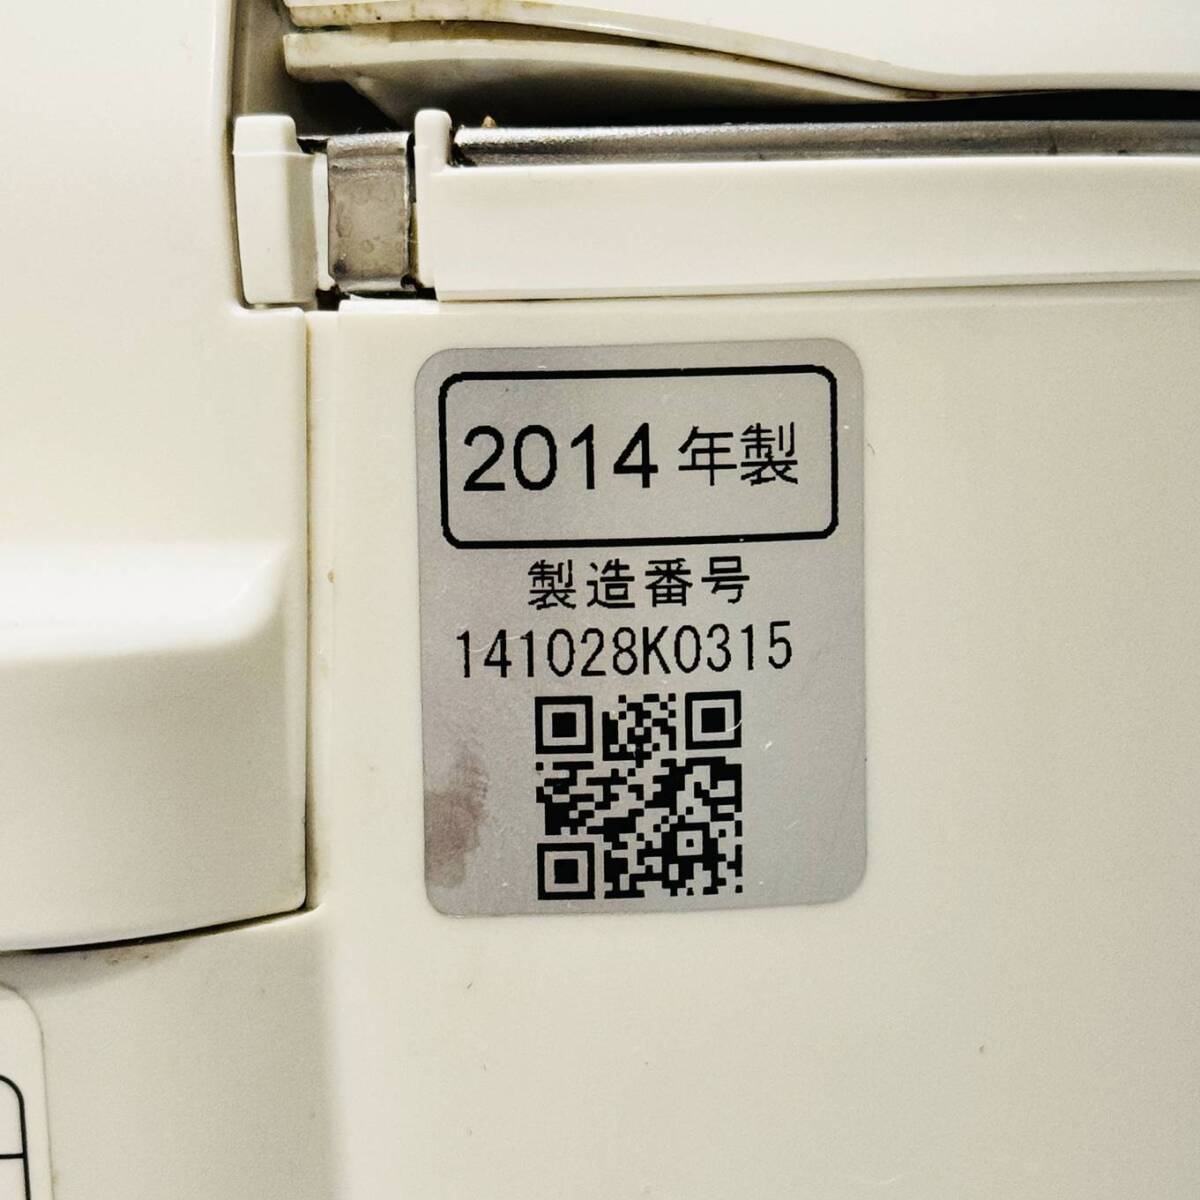 甲MJ17518 クリーニング済 動作確認済 2014年製 5.5合炊き パナソニック IHジャー炊飯器 SR-HX104 炊飯ジャー 調理機器 白の画像8